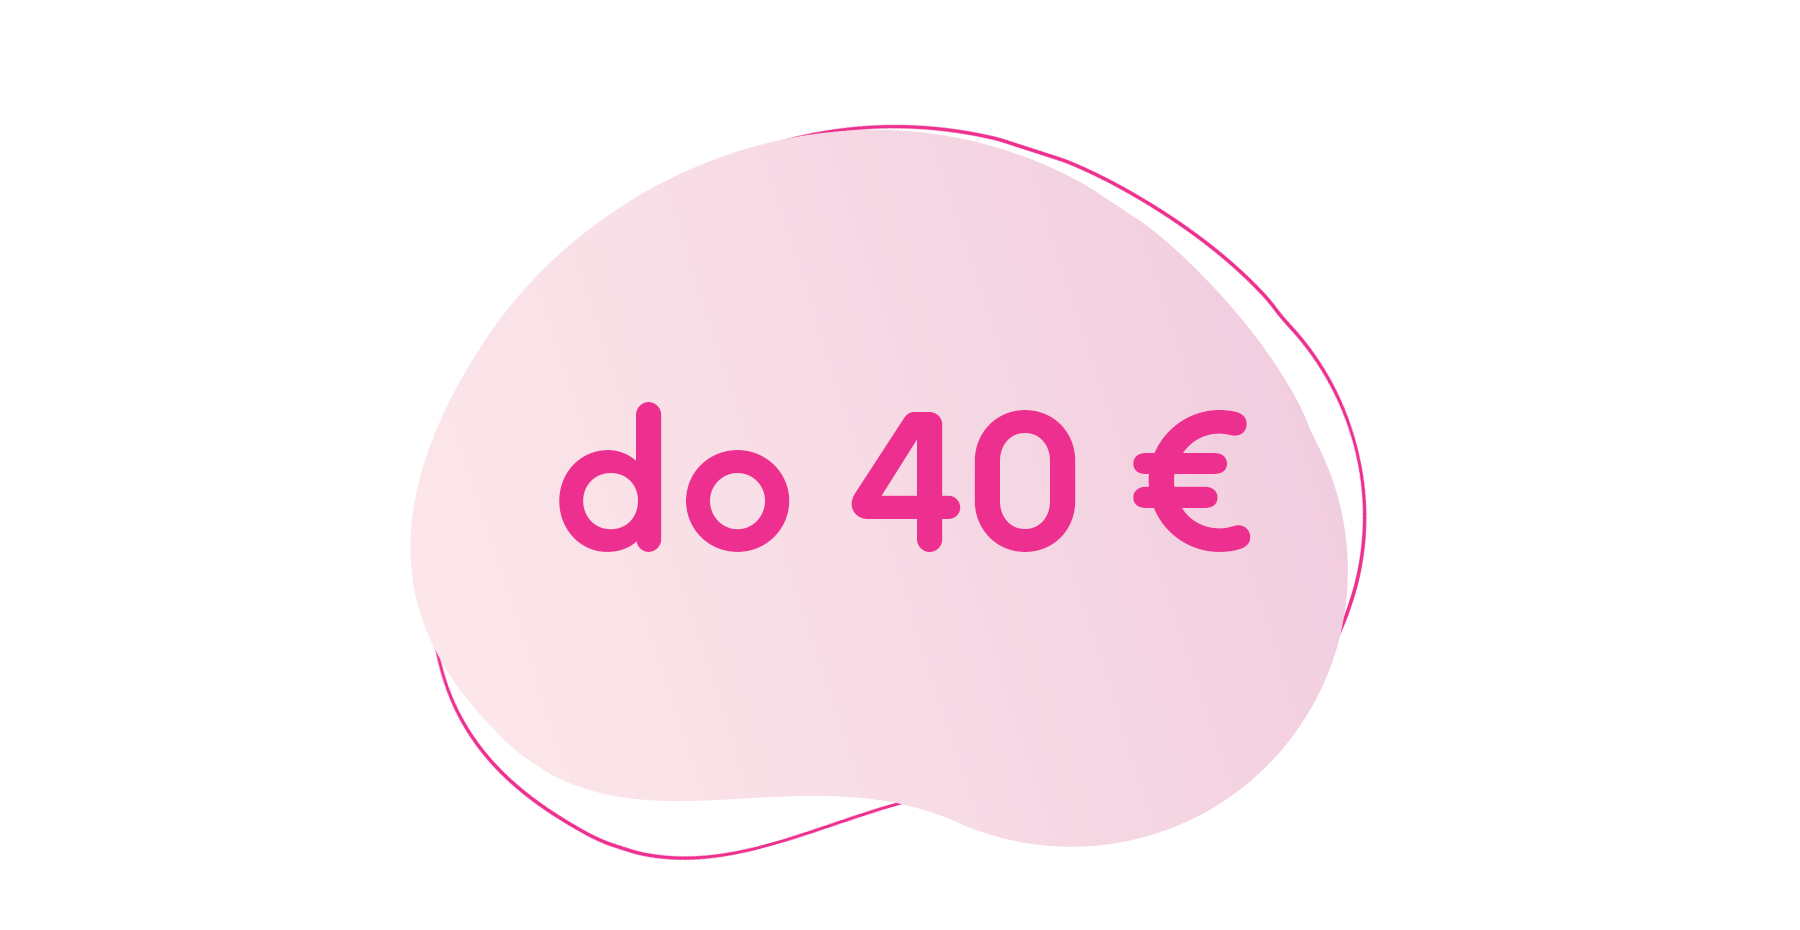 darky do 40 eur